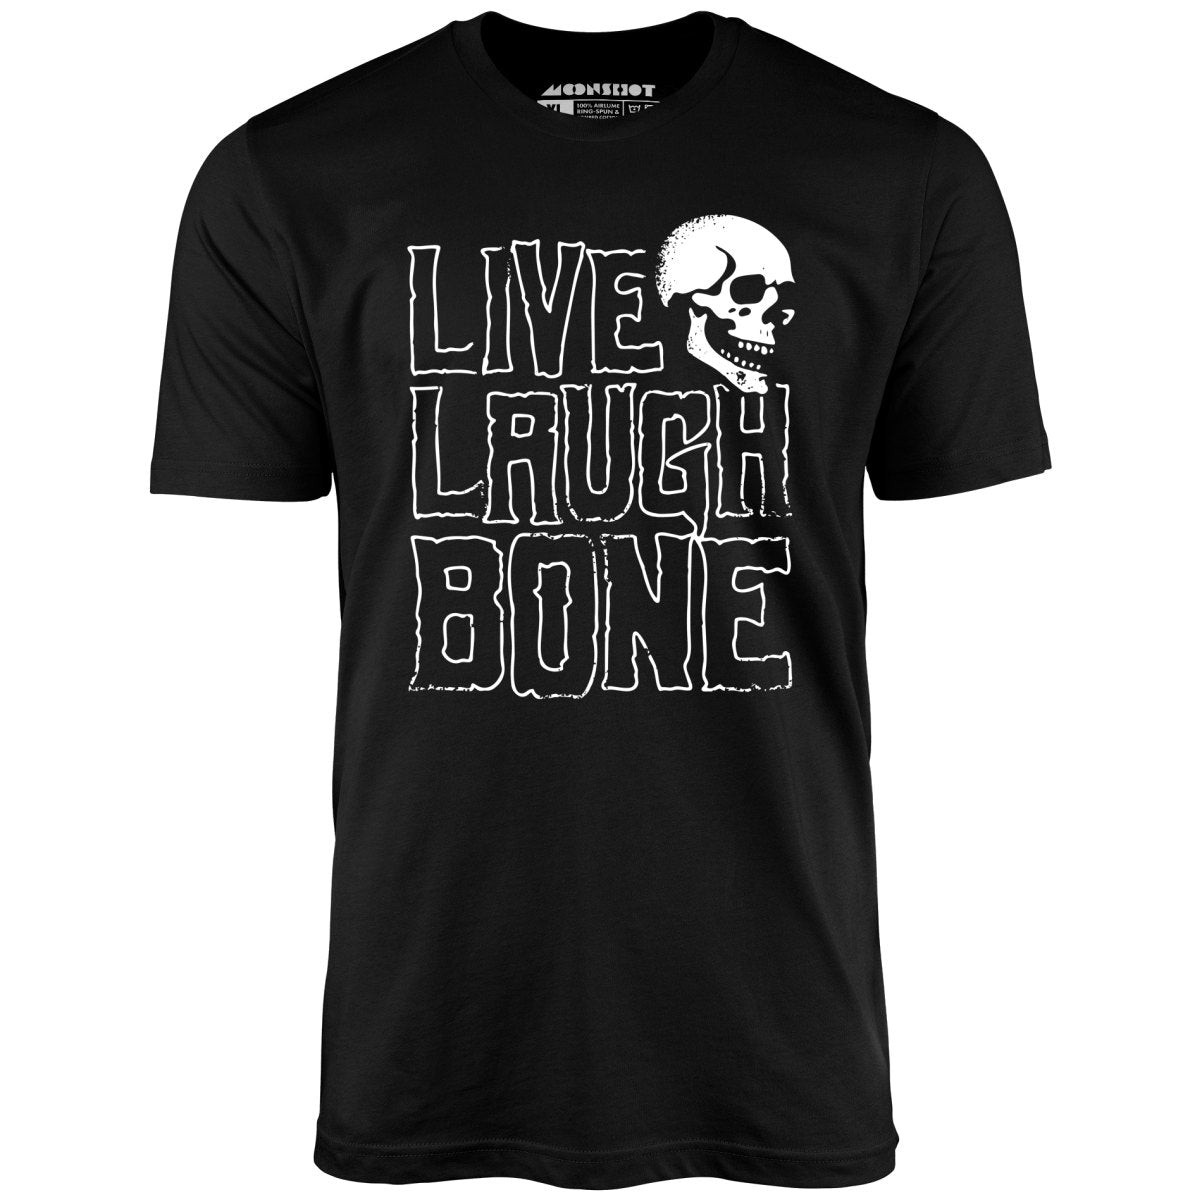 Live Laugh Bone - Unisex T-Shirt